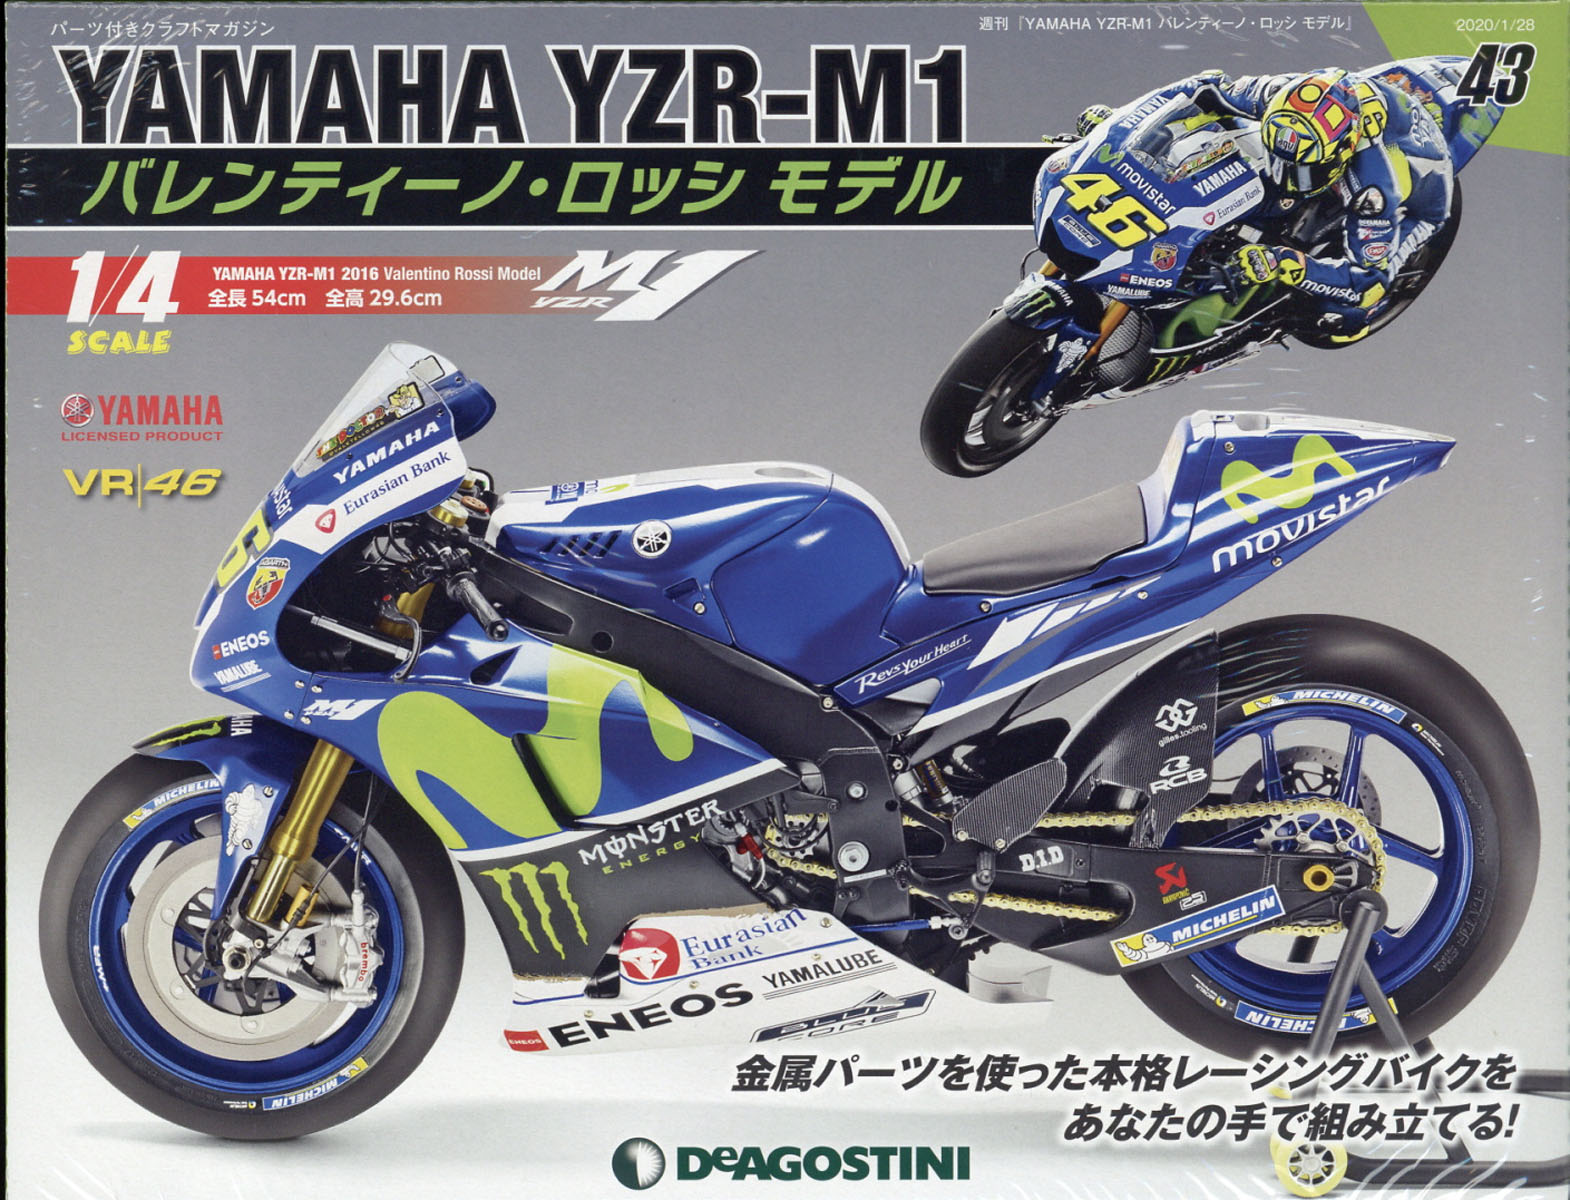 週刊 YAMAHA YZR-1 バレンティーノ・ロッシ モデル 2020年 1/28号 [雑誌]